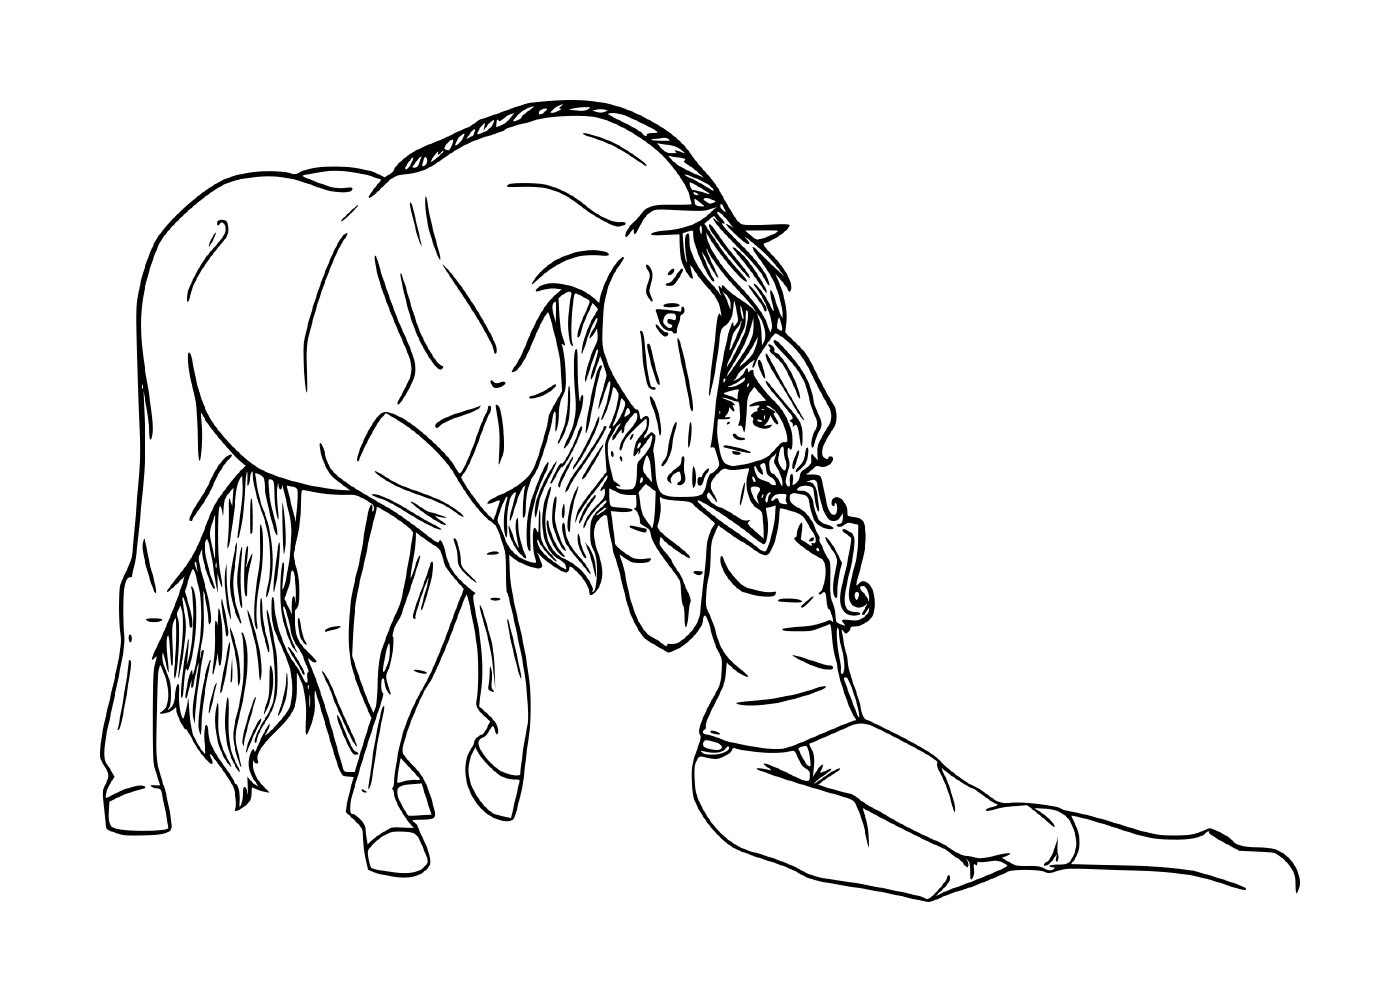   Jeune fille partageant une connexion spéciale avec son cheval 